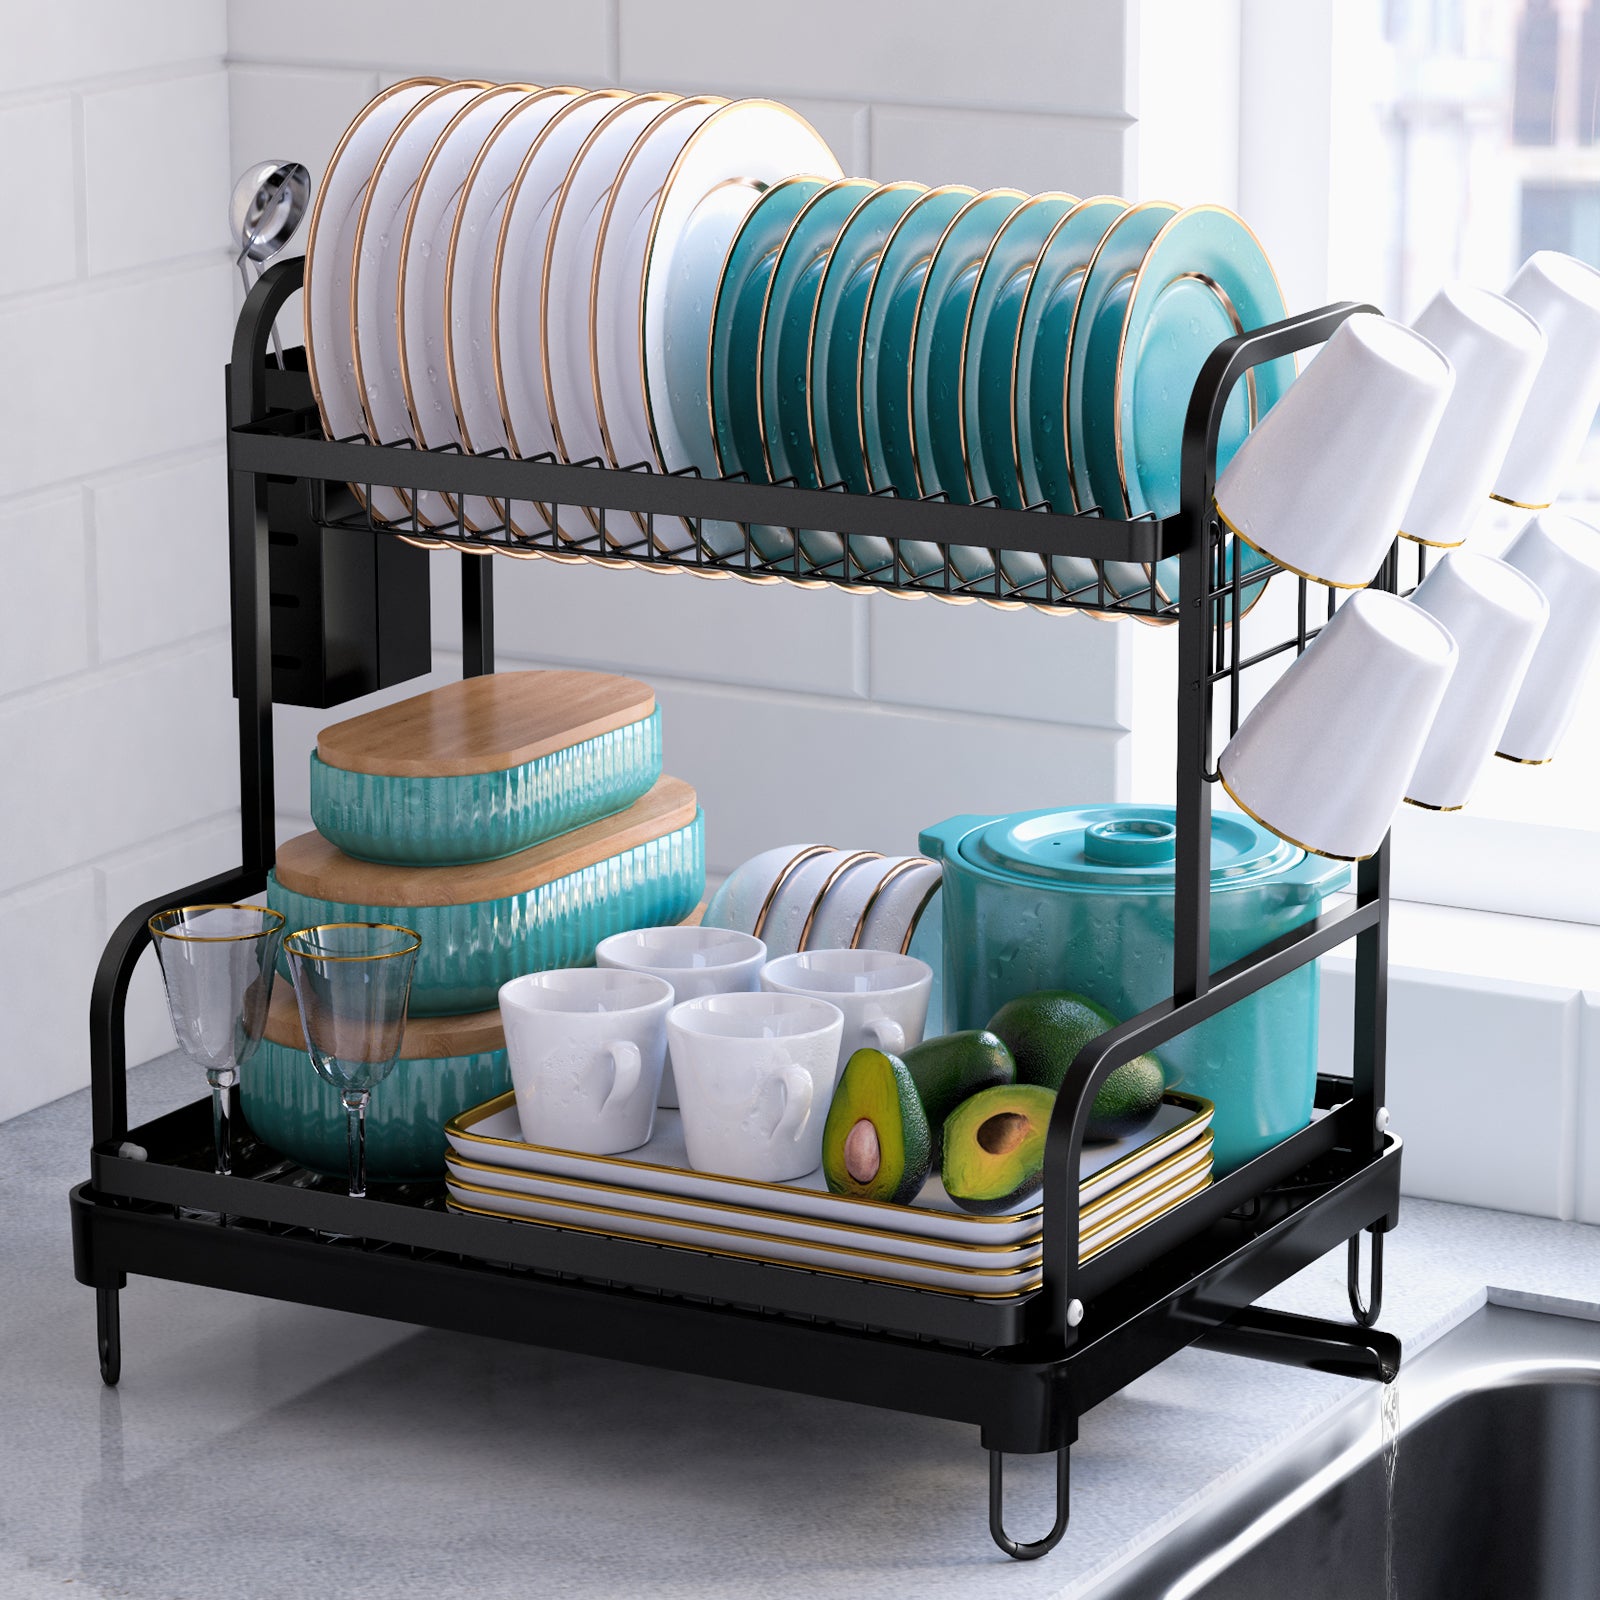  Kitsure Kitchen Dish Drying Rack - Extendable Dish